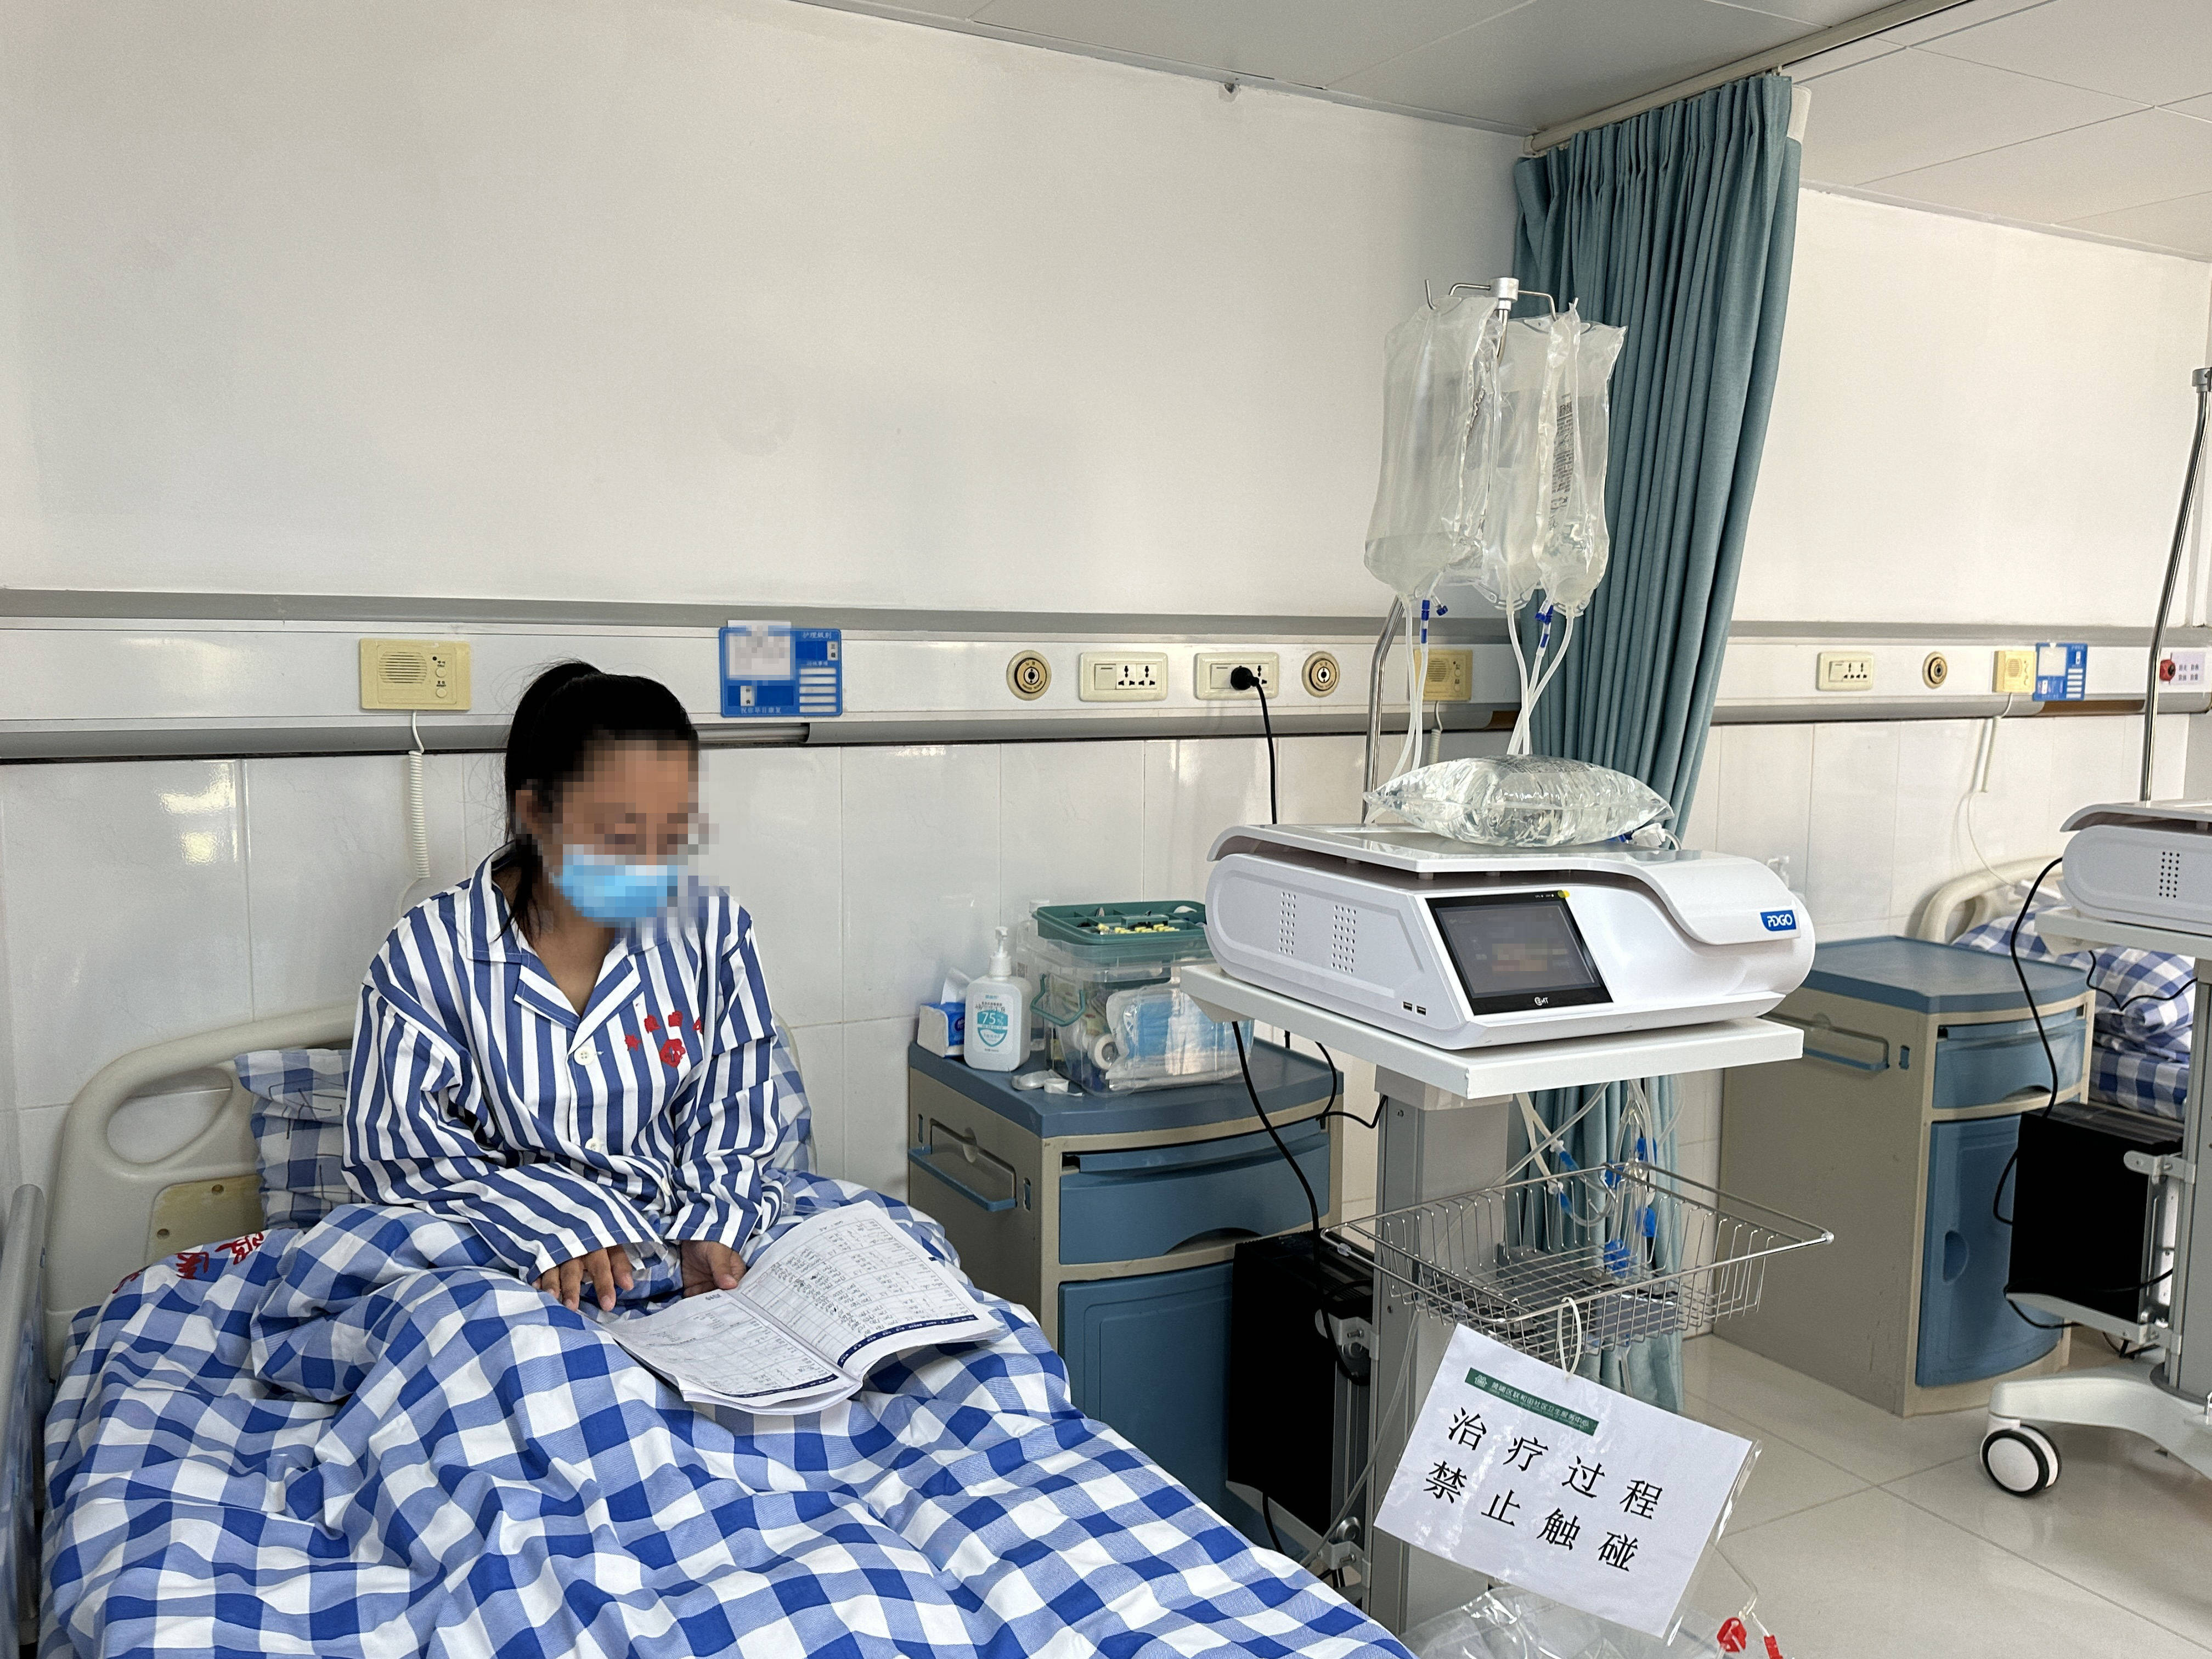 尿毒症患者可在家洗肾,广州建起三级居家腹膜透析治疗示范体系